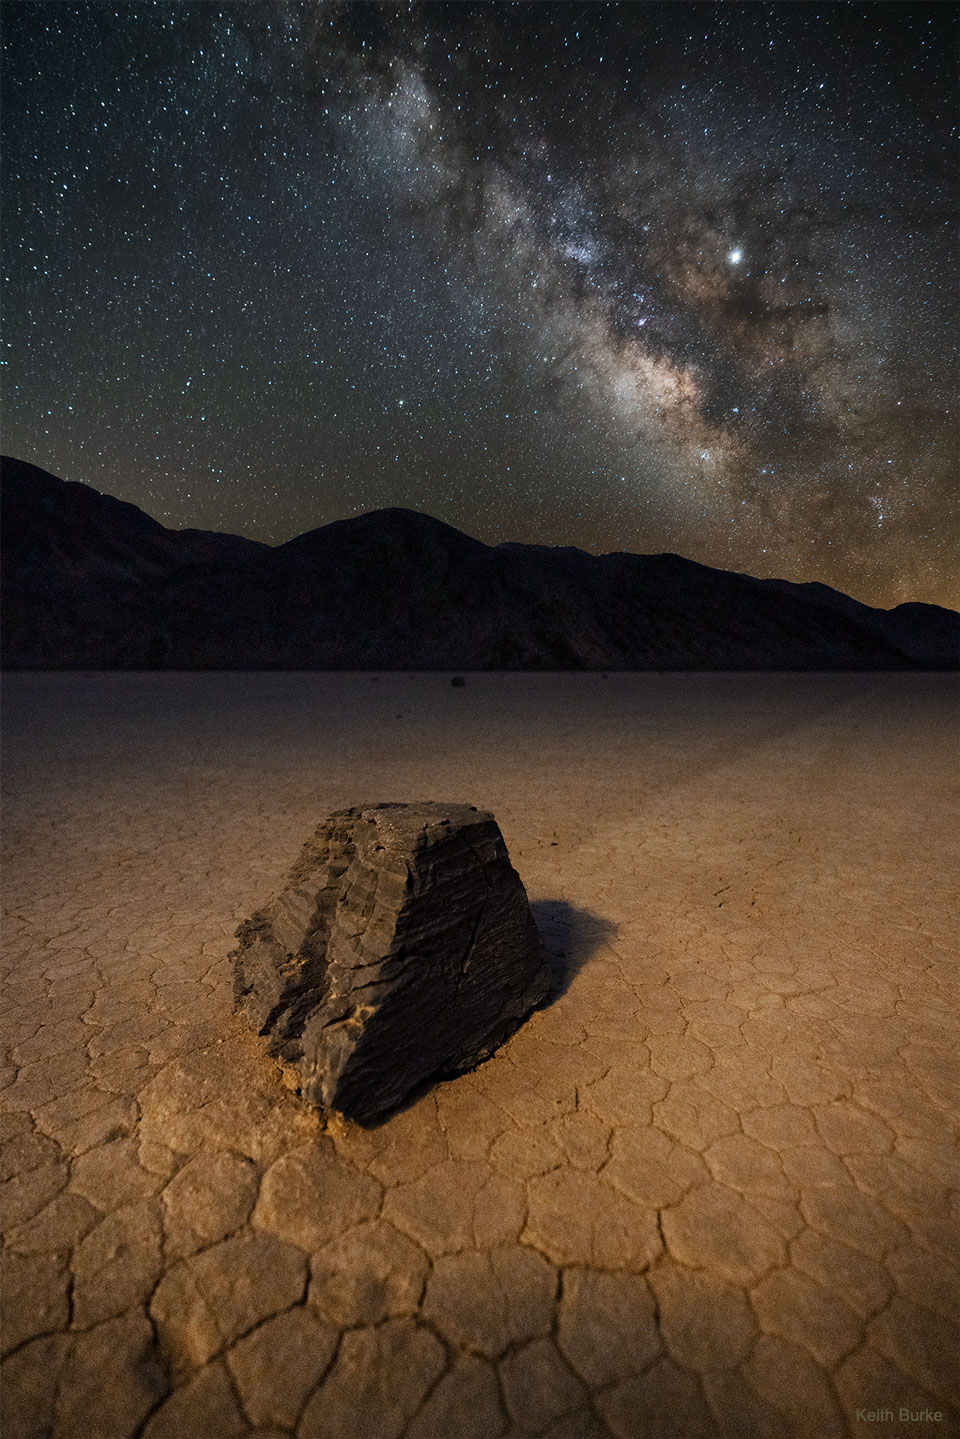 In der Racetrack Playa im Death Valley in Kalifornien wandern riesige Felsbrocken über eine trockene Ebene; Ein Klick auf das Bild lädt die höchstaufgelöste verfügbare Version.